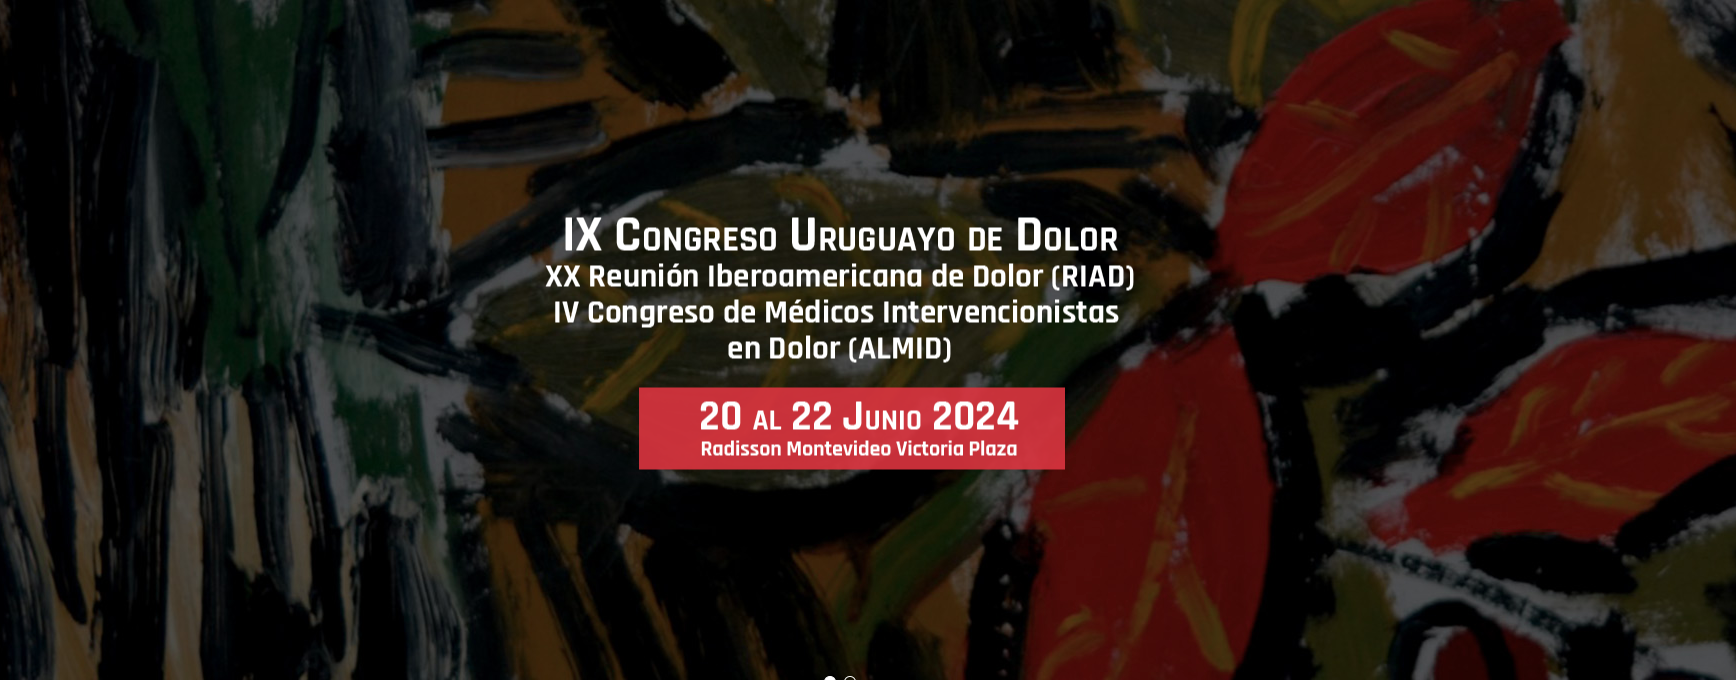 Congreso Uruguayo del Dolor